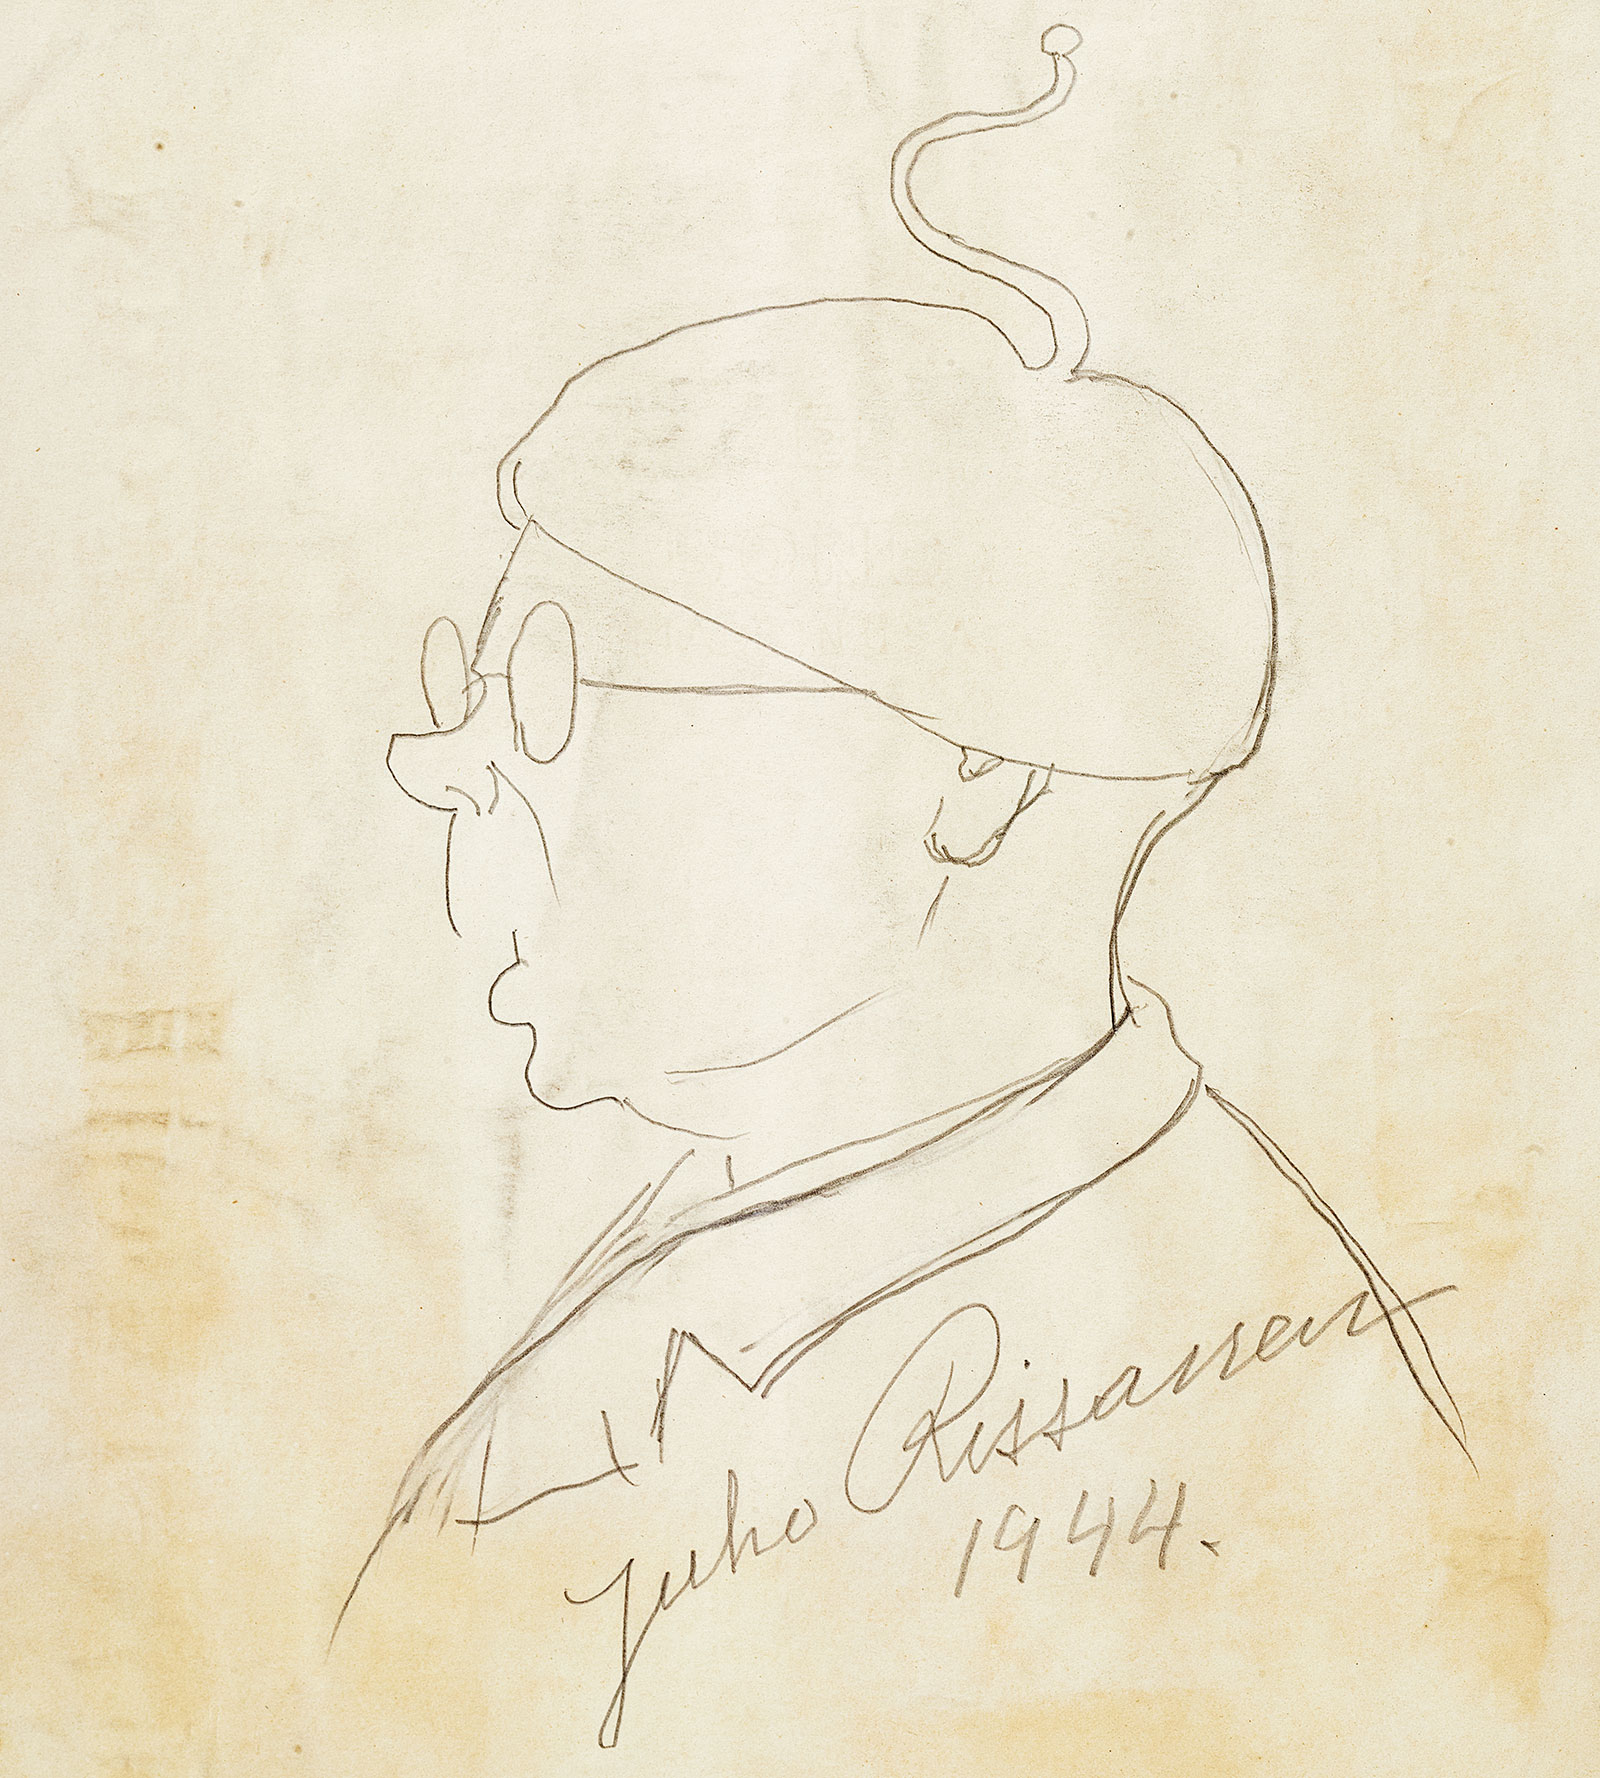 Self-portrait of Juho Rissanen